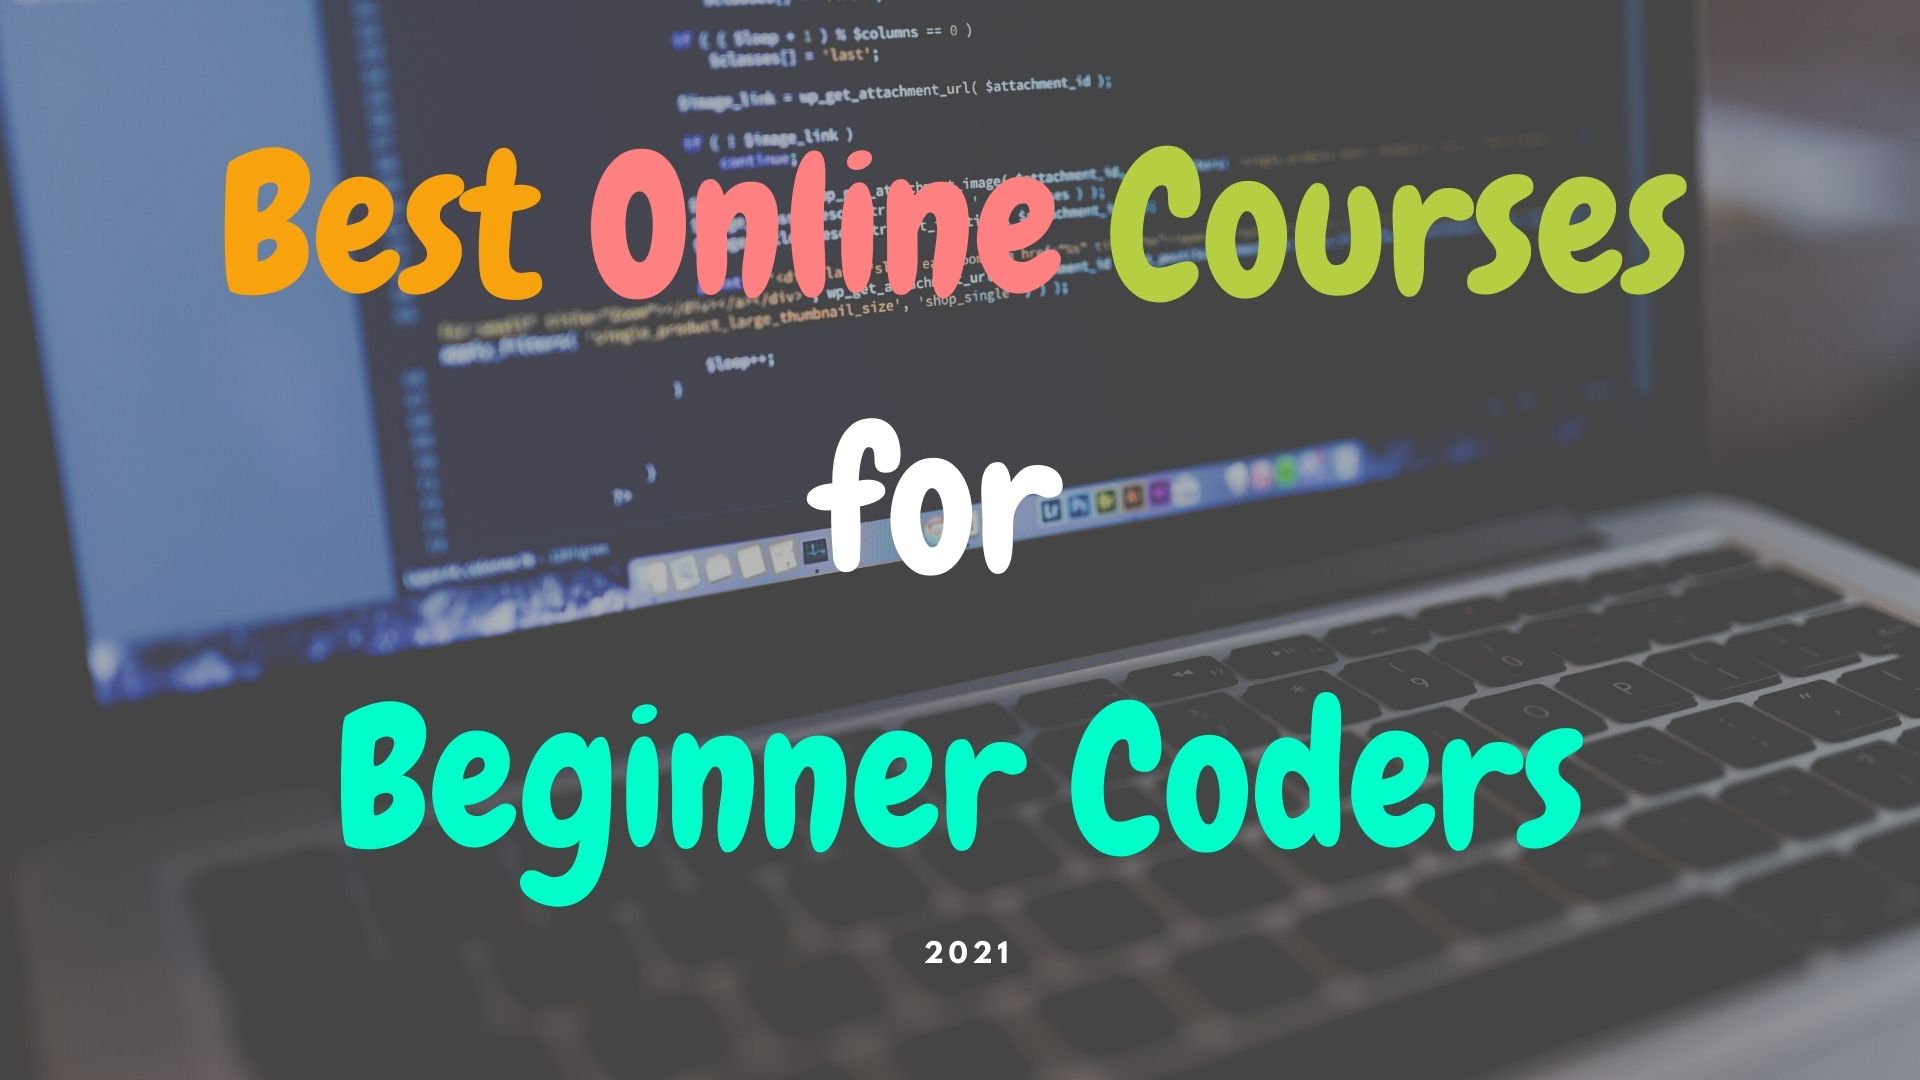 Best Online Courses for Beginner Coders